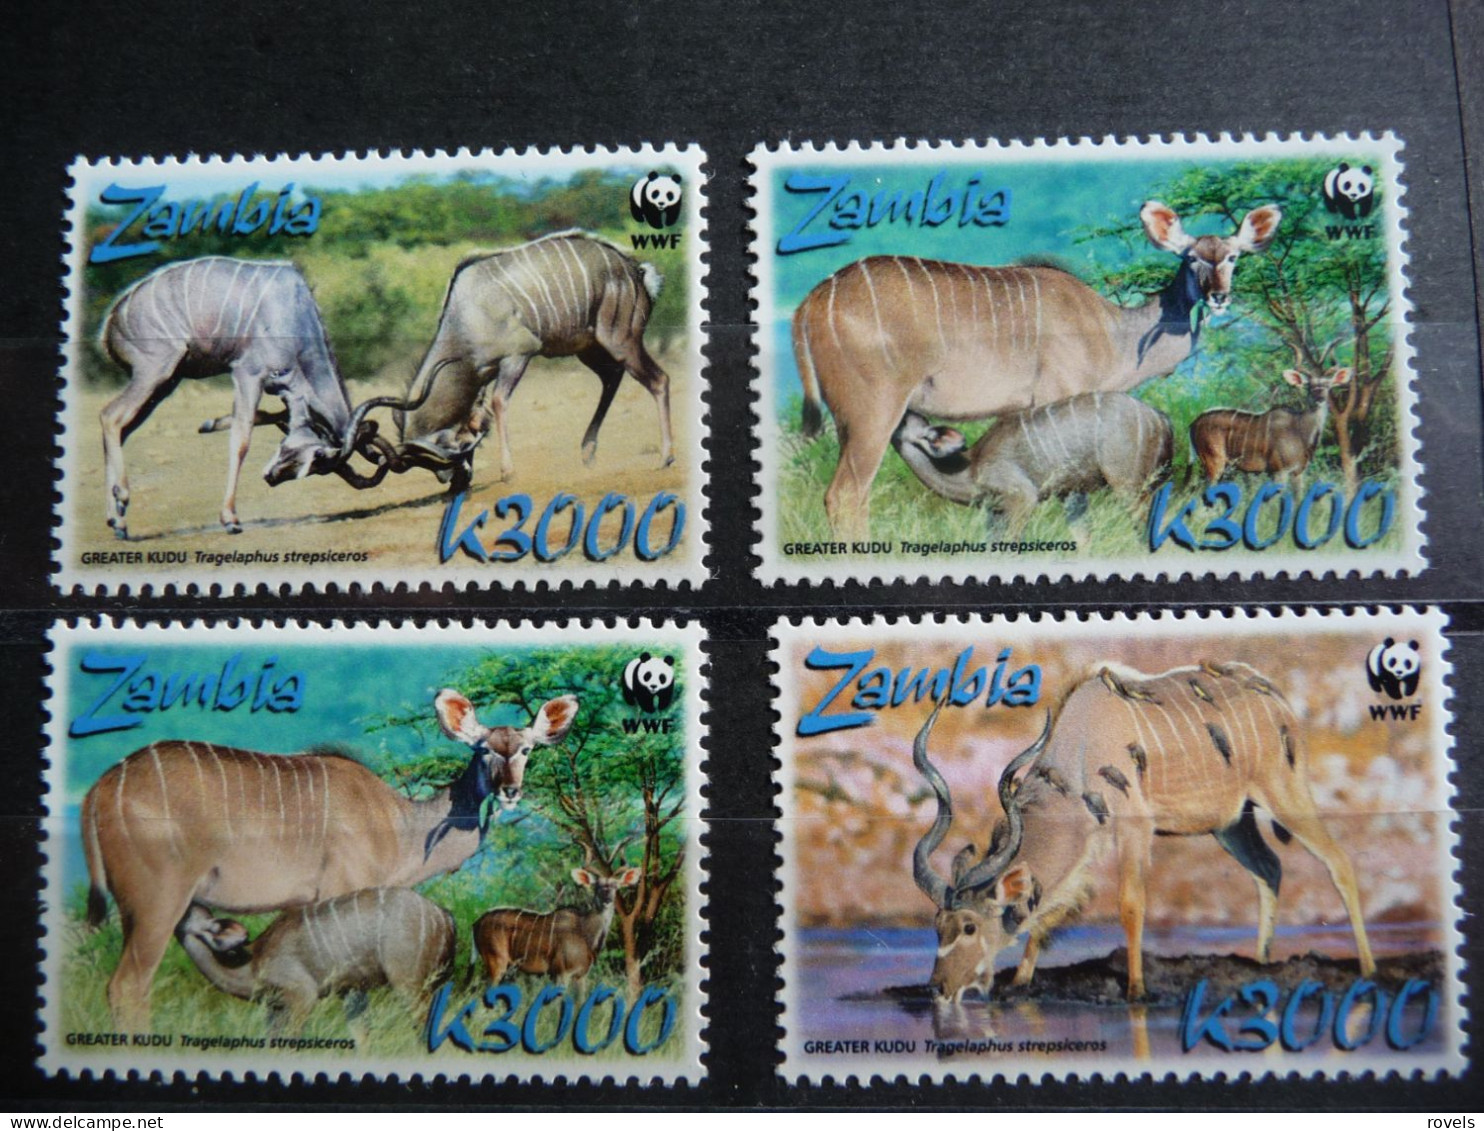 (8) ZAMBIA, FAUNA, MAMIFEROS, WWF, 2008, MNH. - Zambie (1965-...)